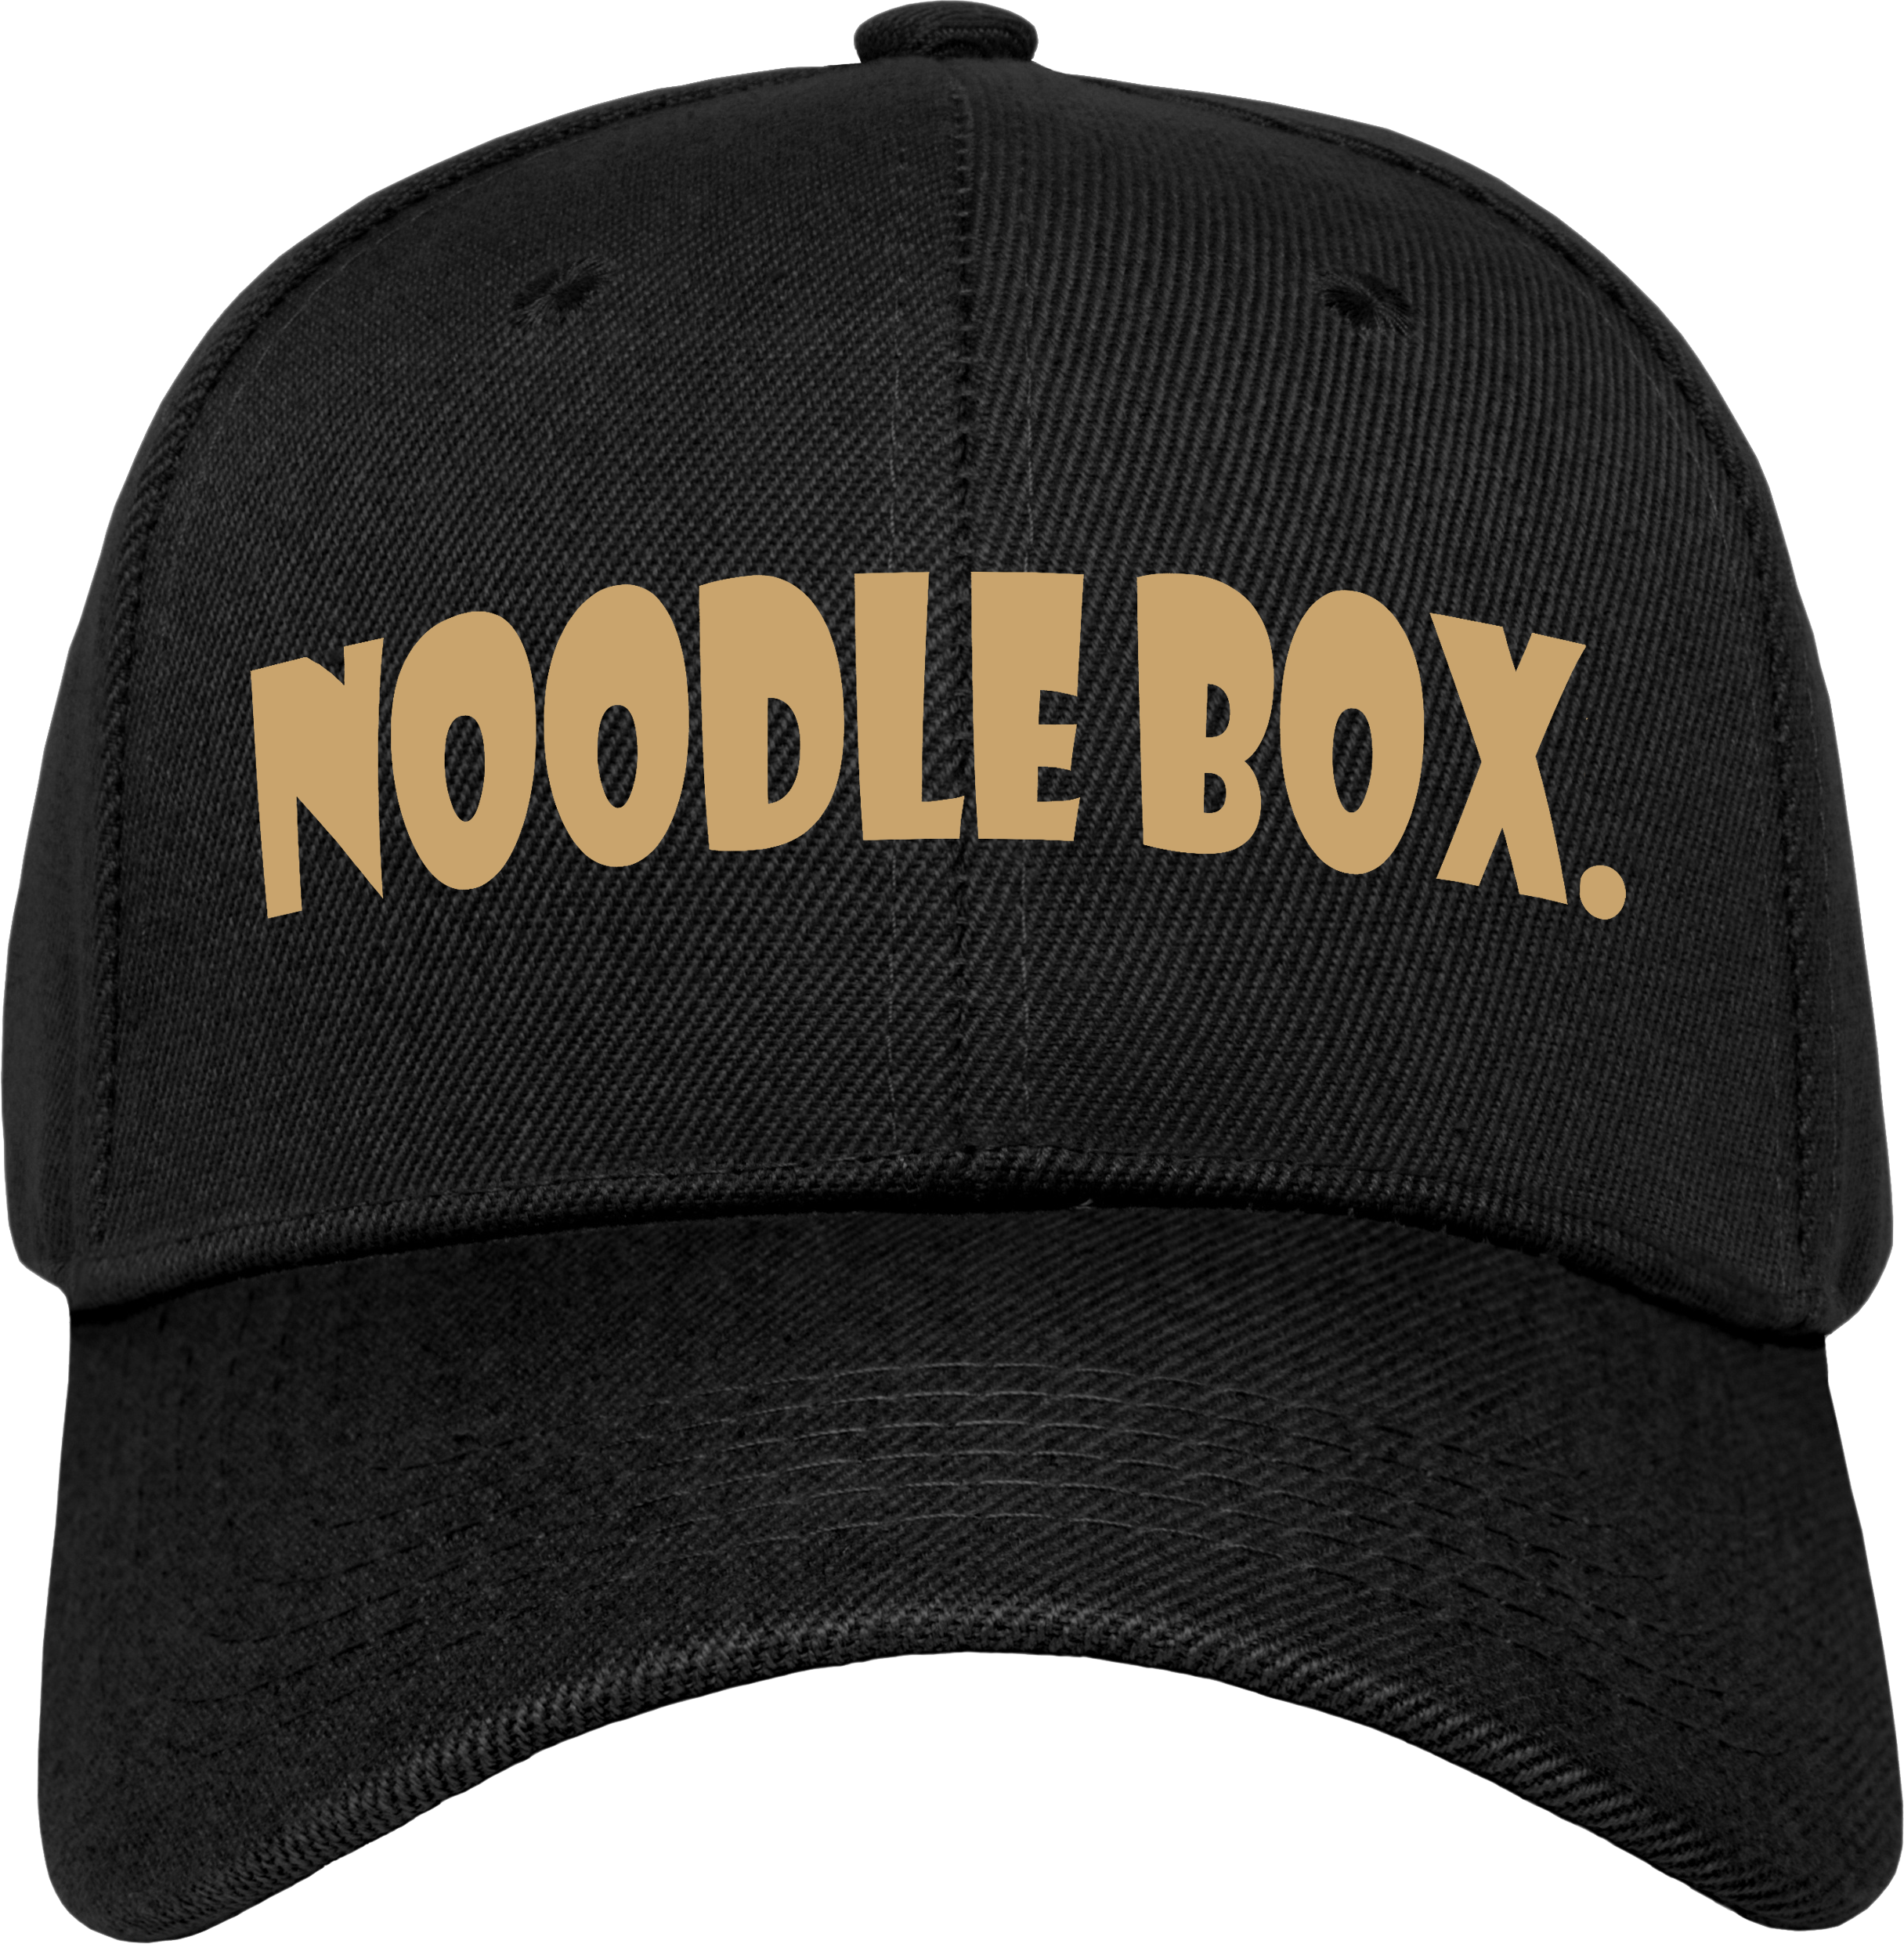 Noodle Box LOGO CAP